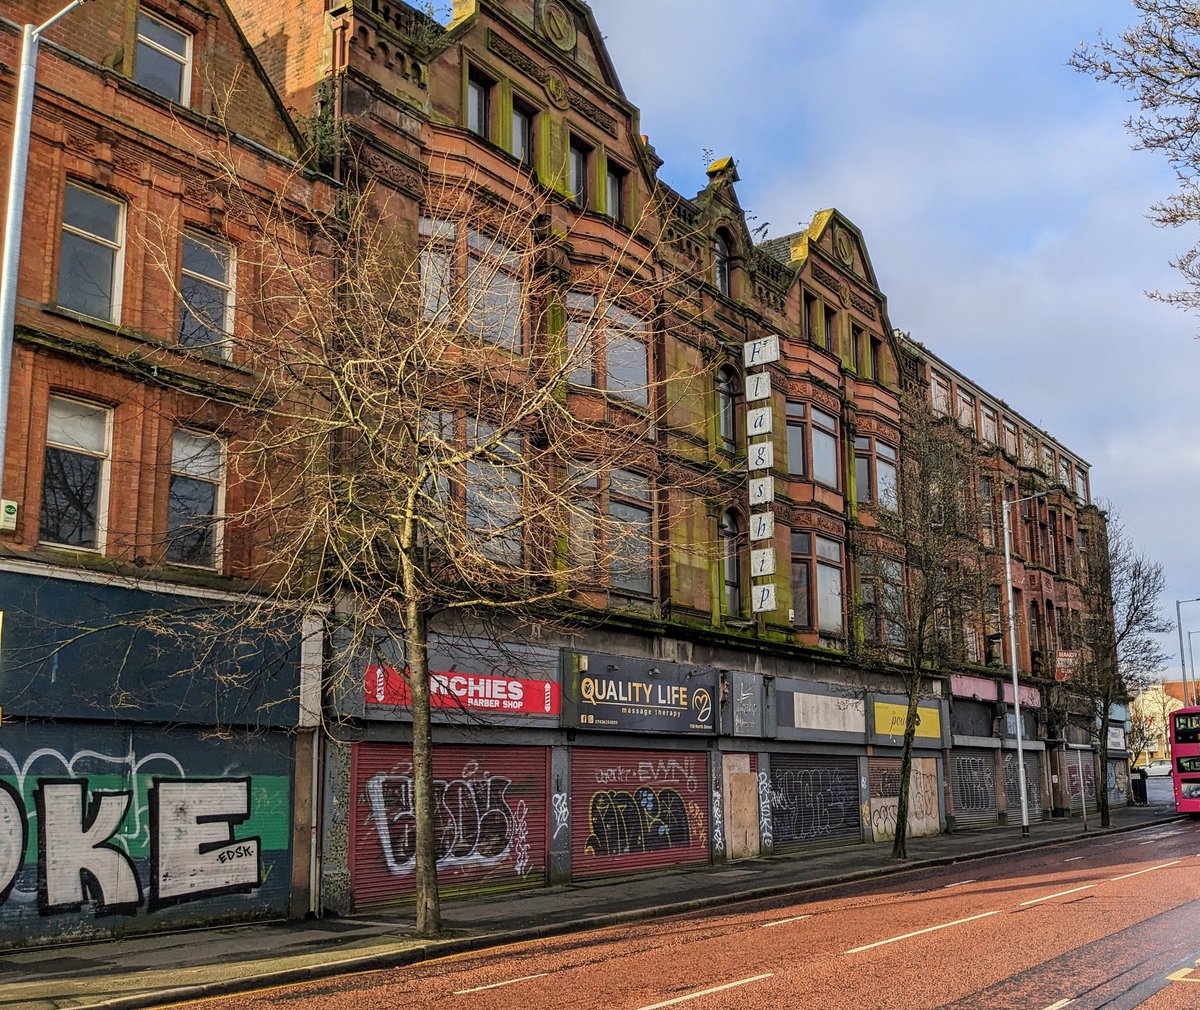 The city centre is derelict and deserted
#DerelictIreland #Belfast #BéalFeirste